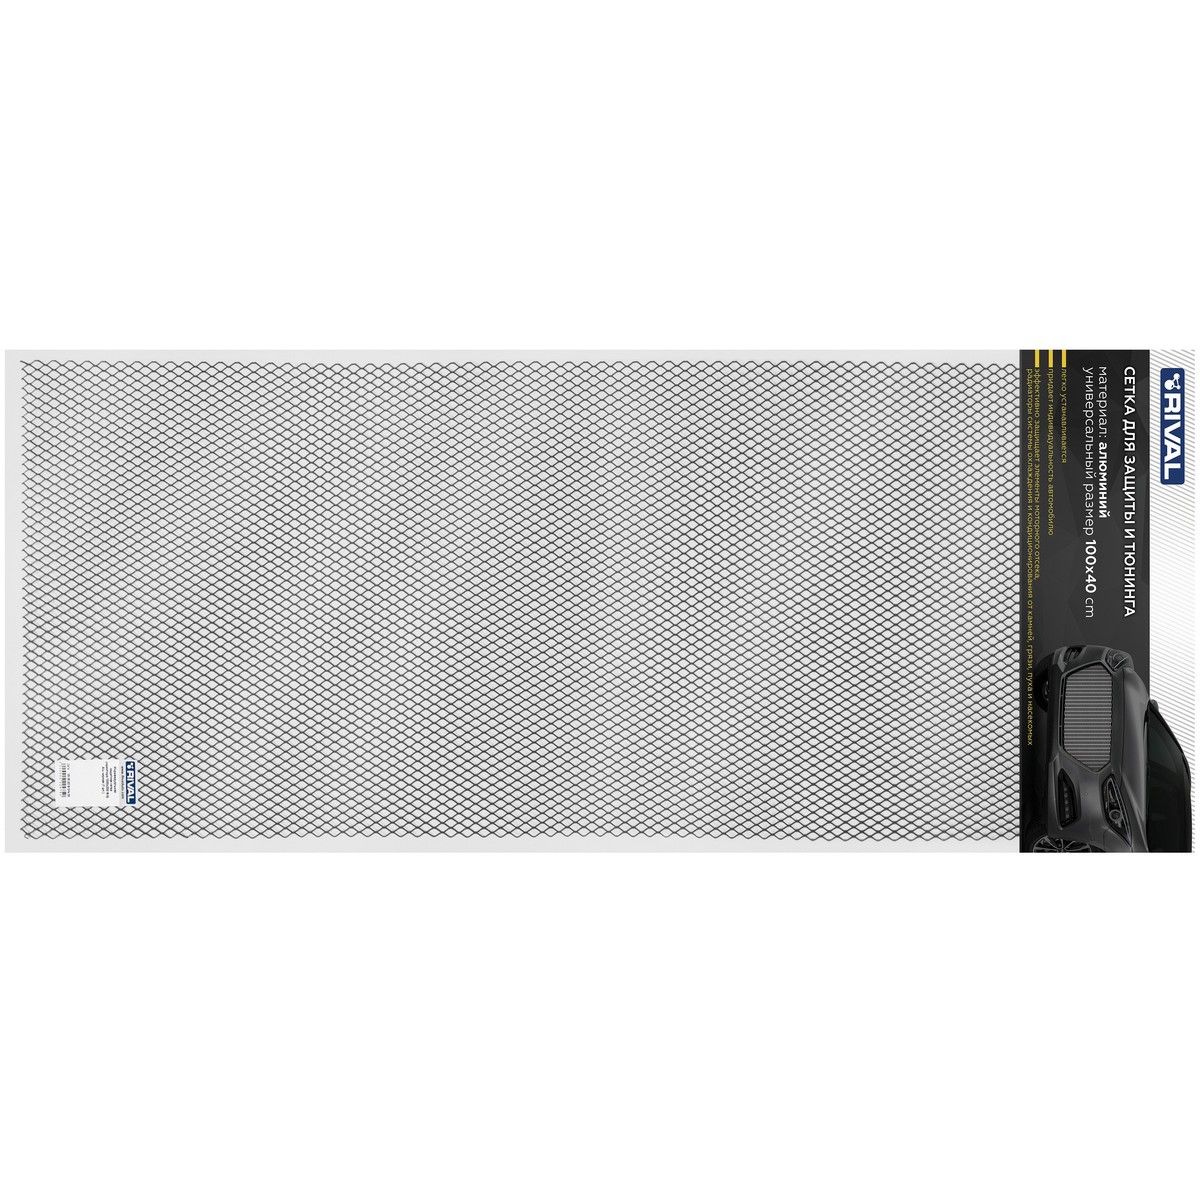 Универсальная сетка Rival 1000х400 R16 для защиты радиатора, черная, 1 шт. (индивидуальная упаковка), INDIV.ZS.1601.2